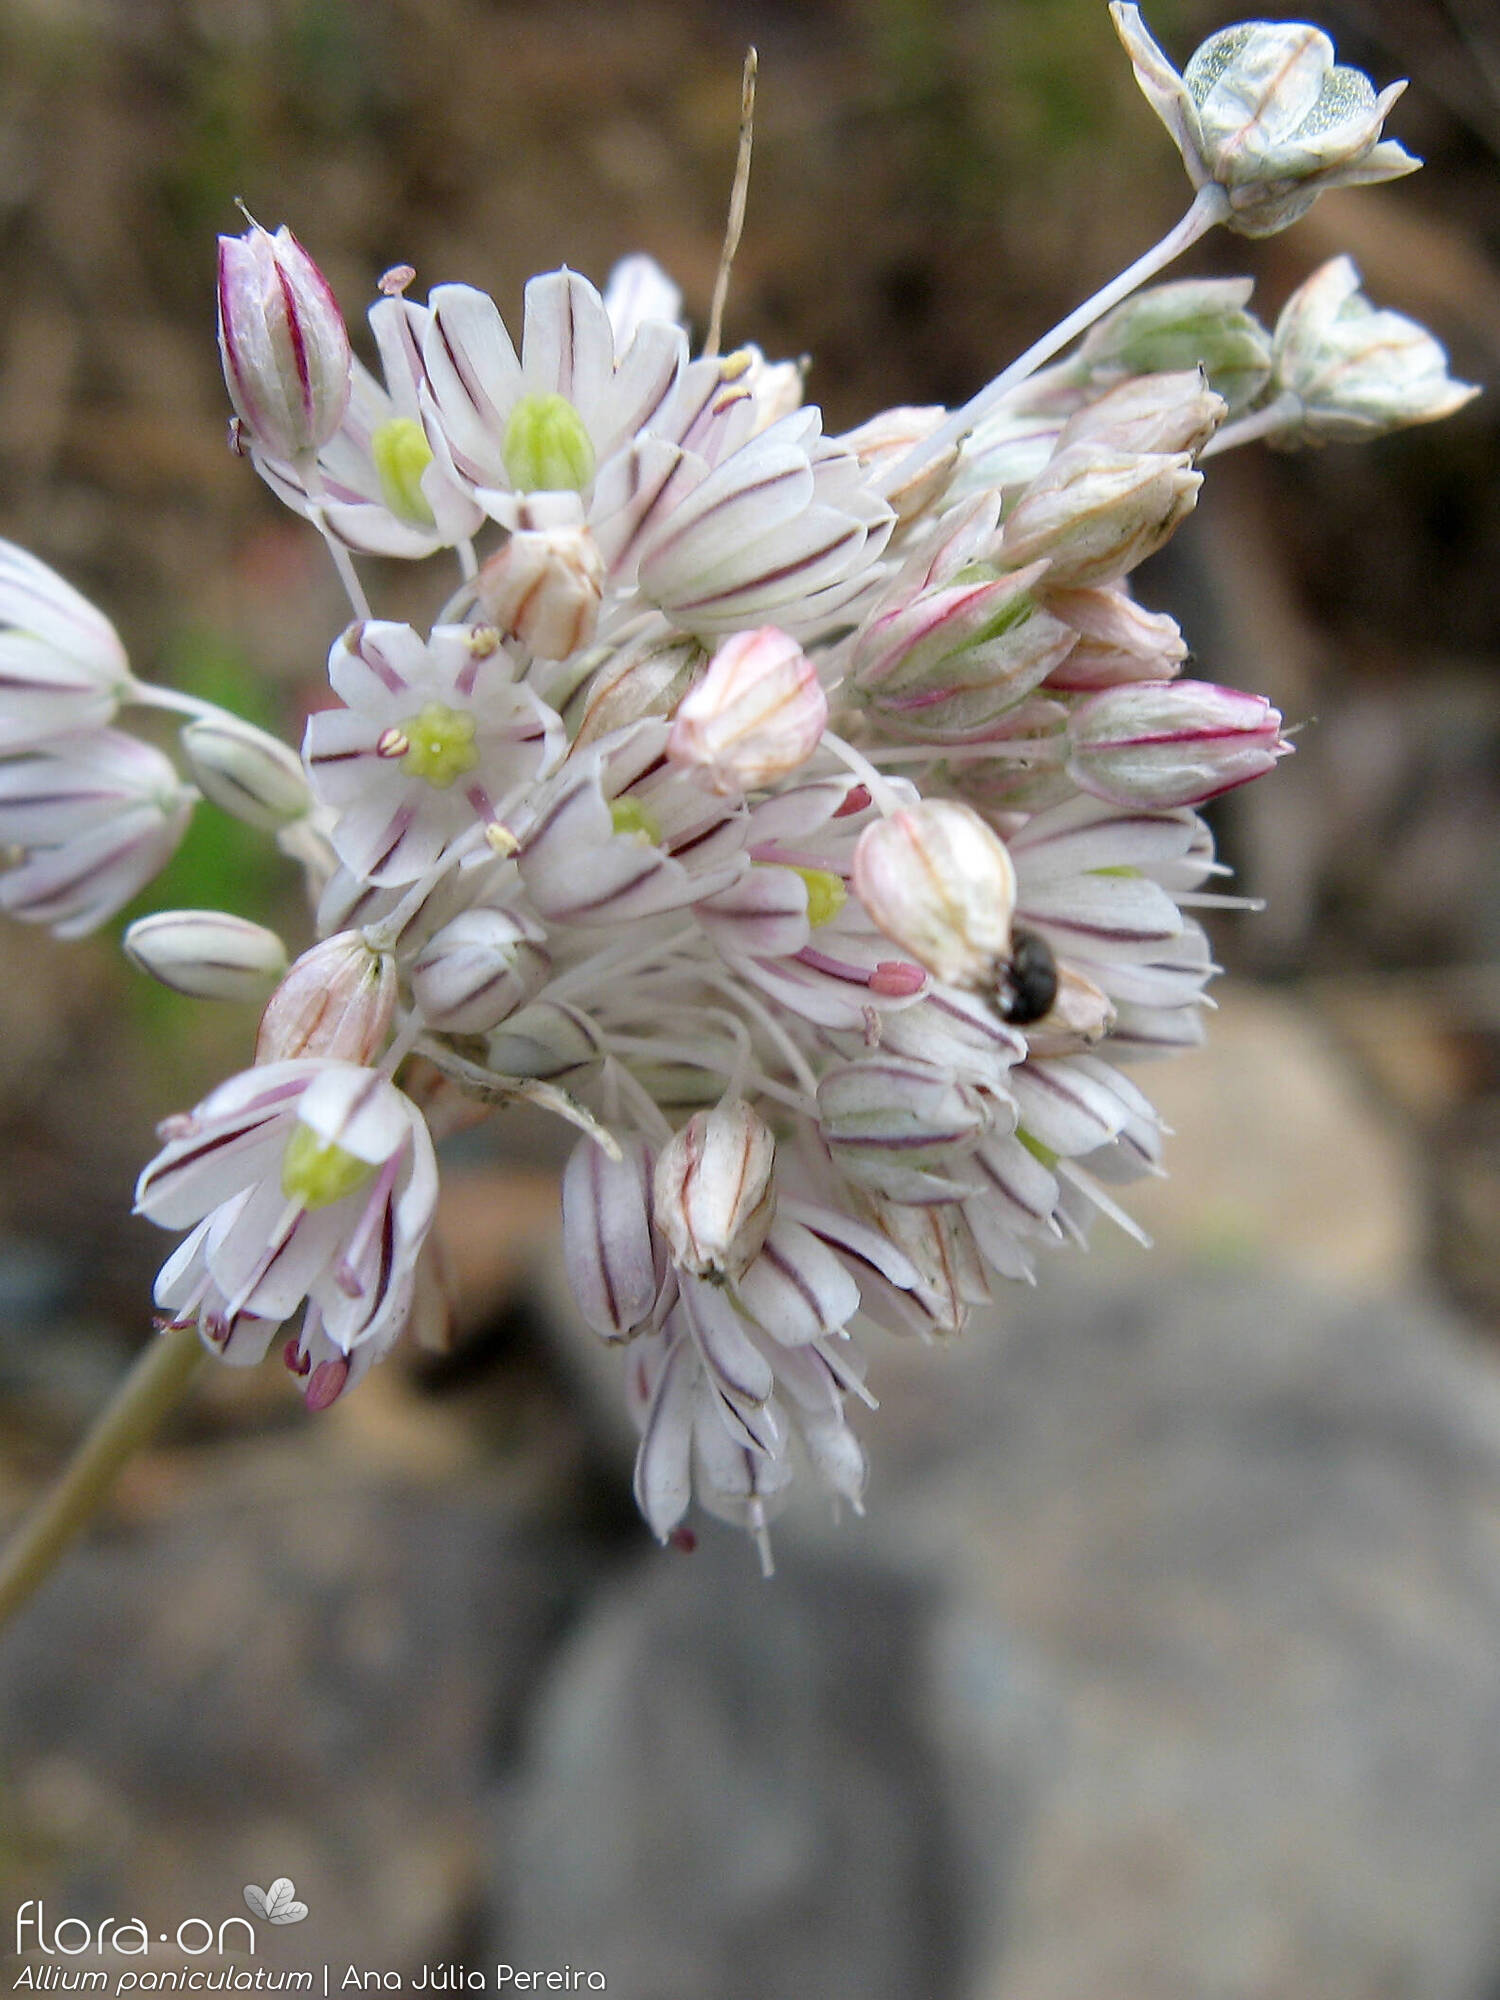 Allium paniculatum - Flor (geral) | Ana Júlia Pereira; CC BY-NC 4.0